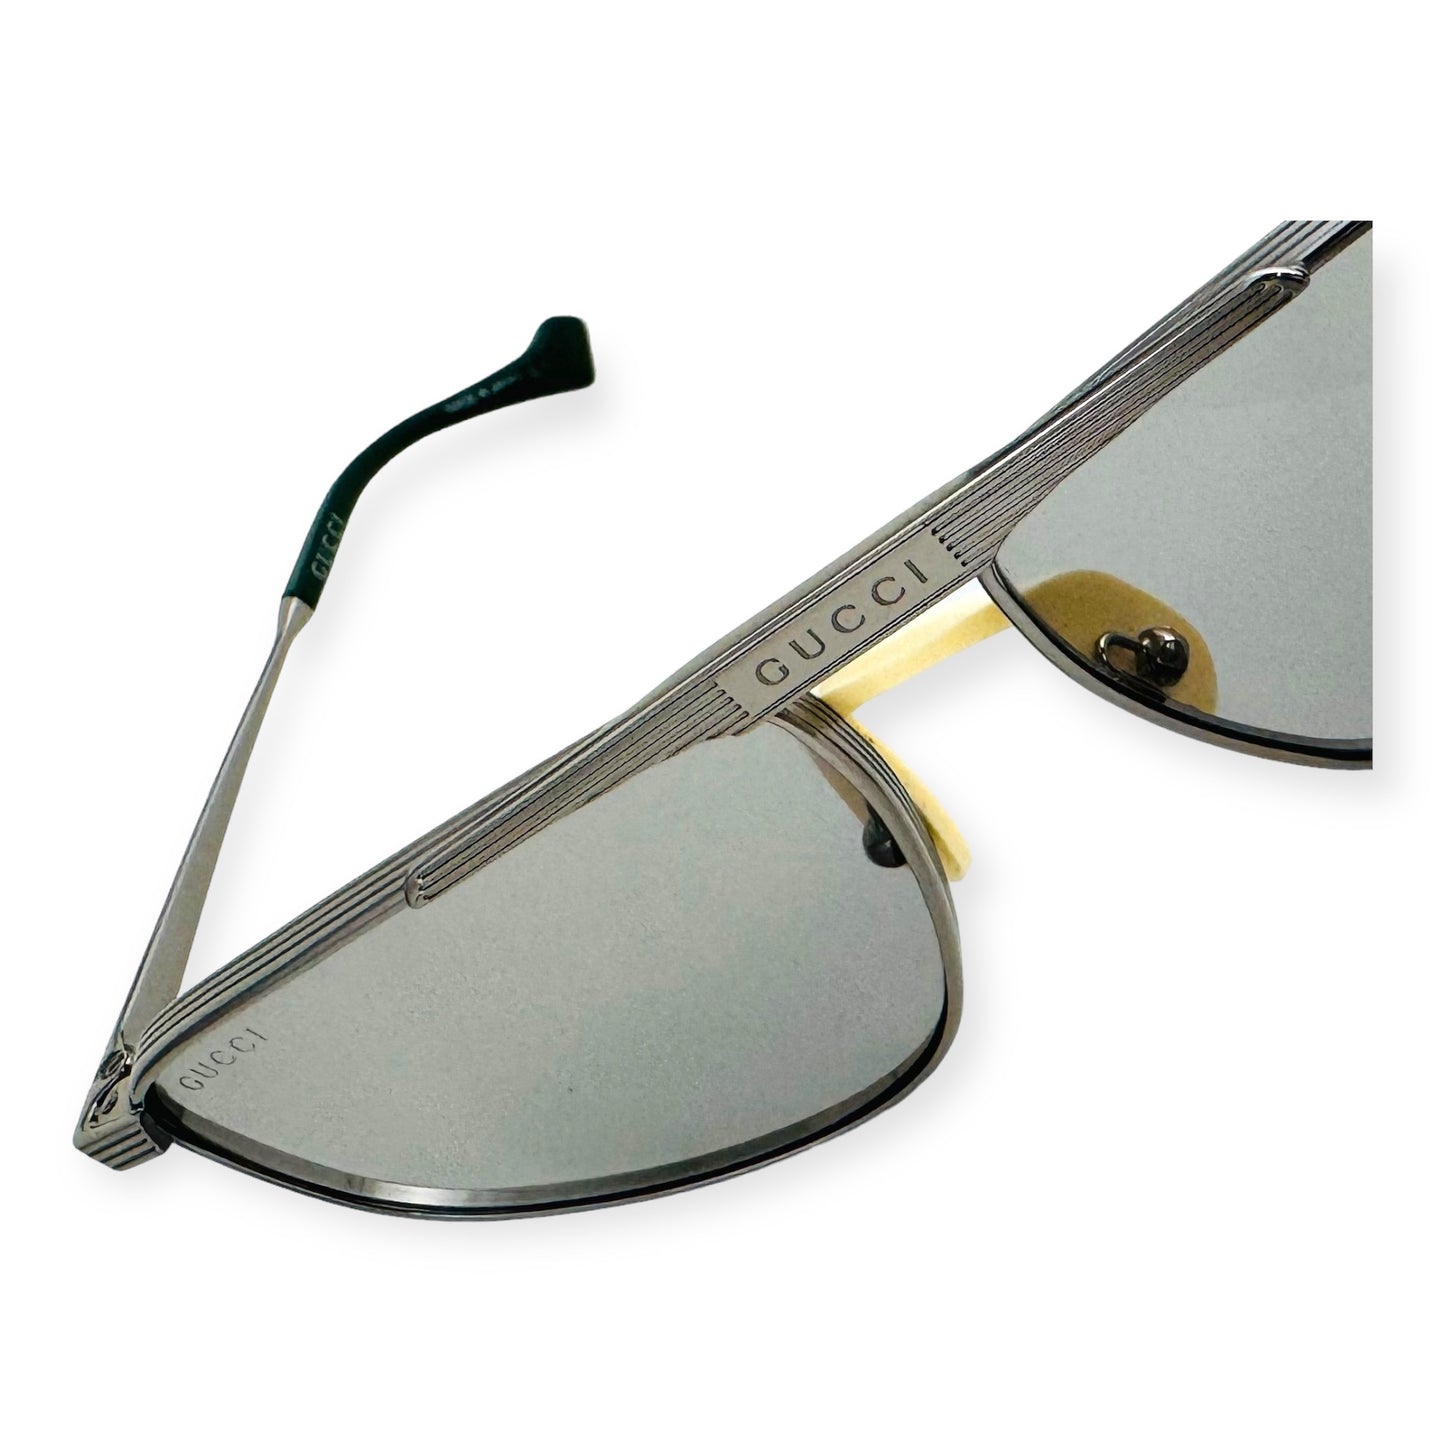 GUCCI Aviator Sunglasses in Gray